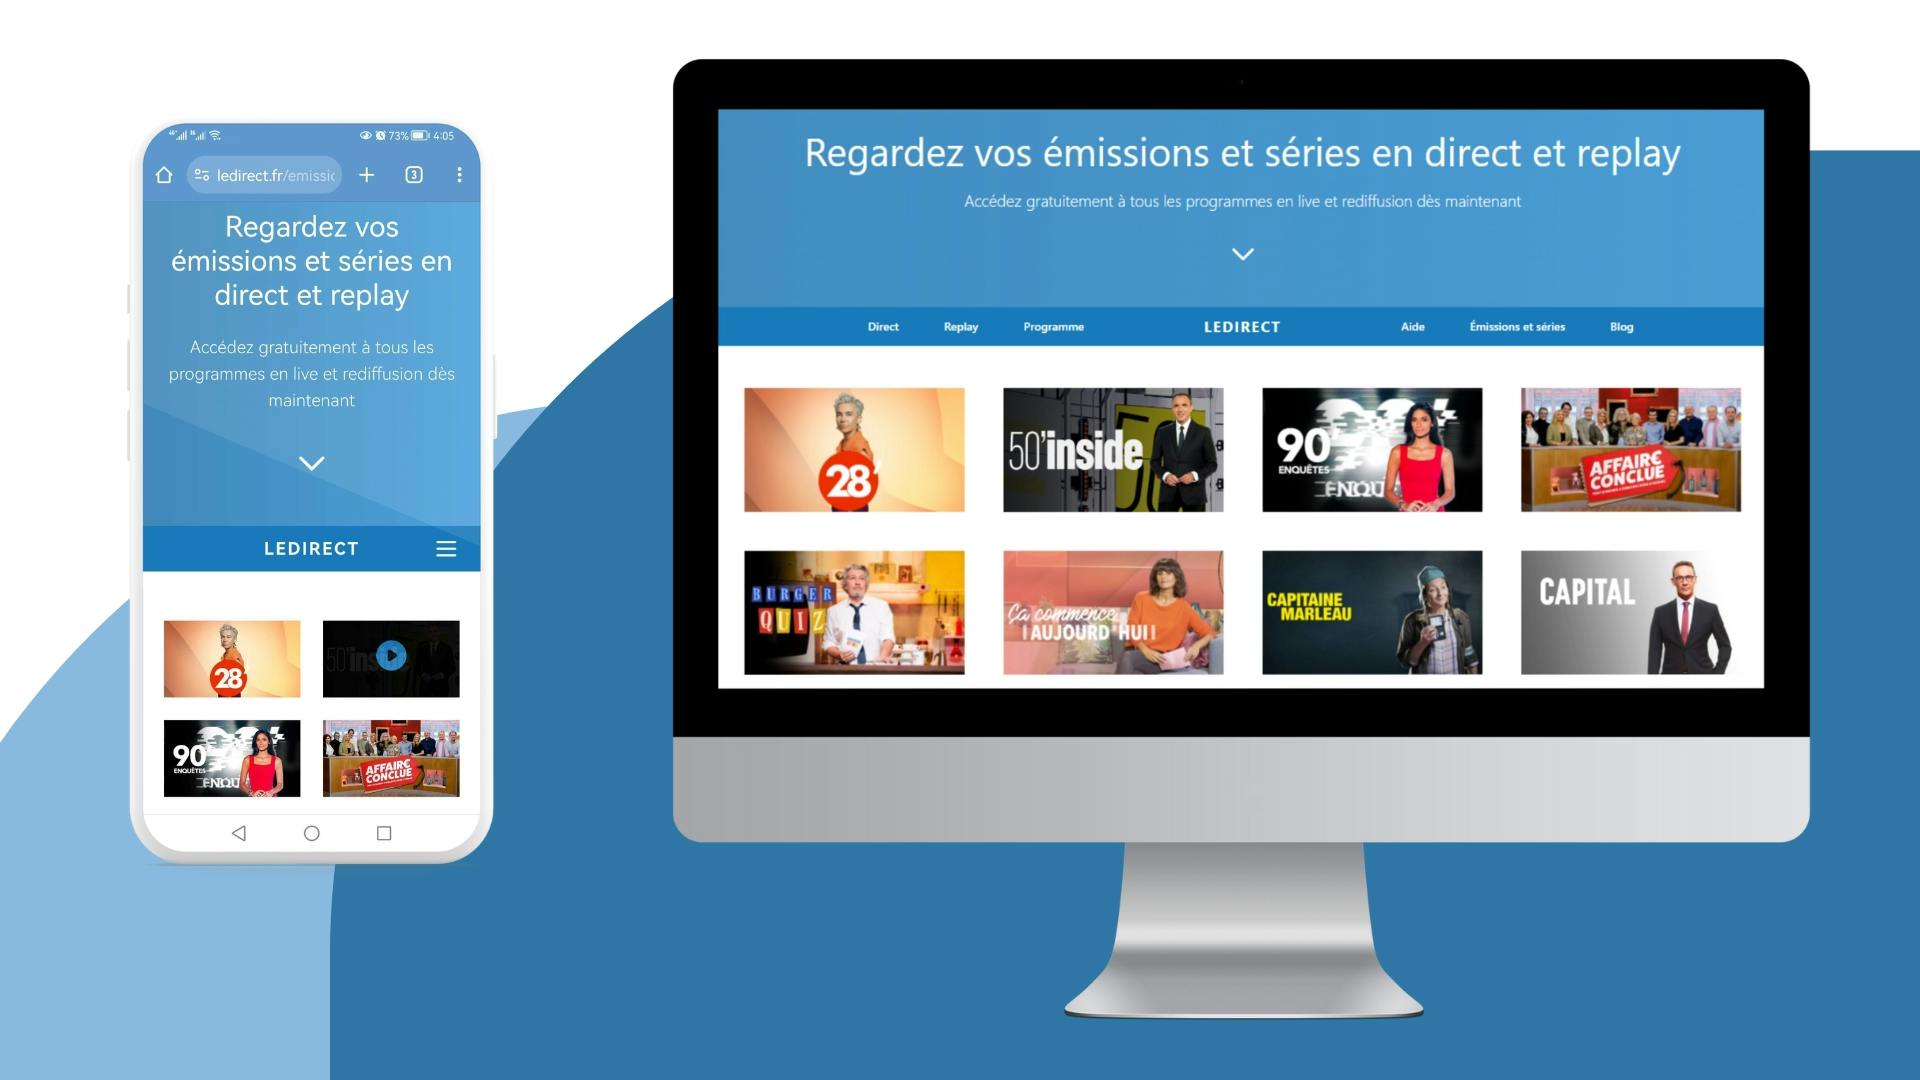 image avec un écran d’ordinateur et un écran mobile montrant la page émissions et séries du site LeDirect.fr